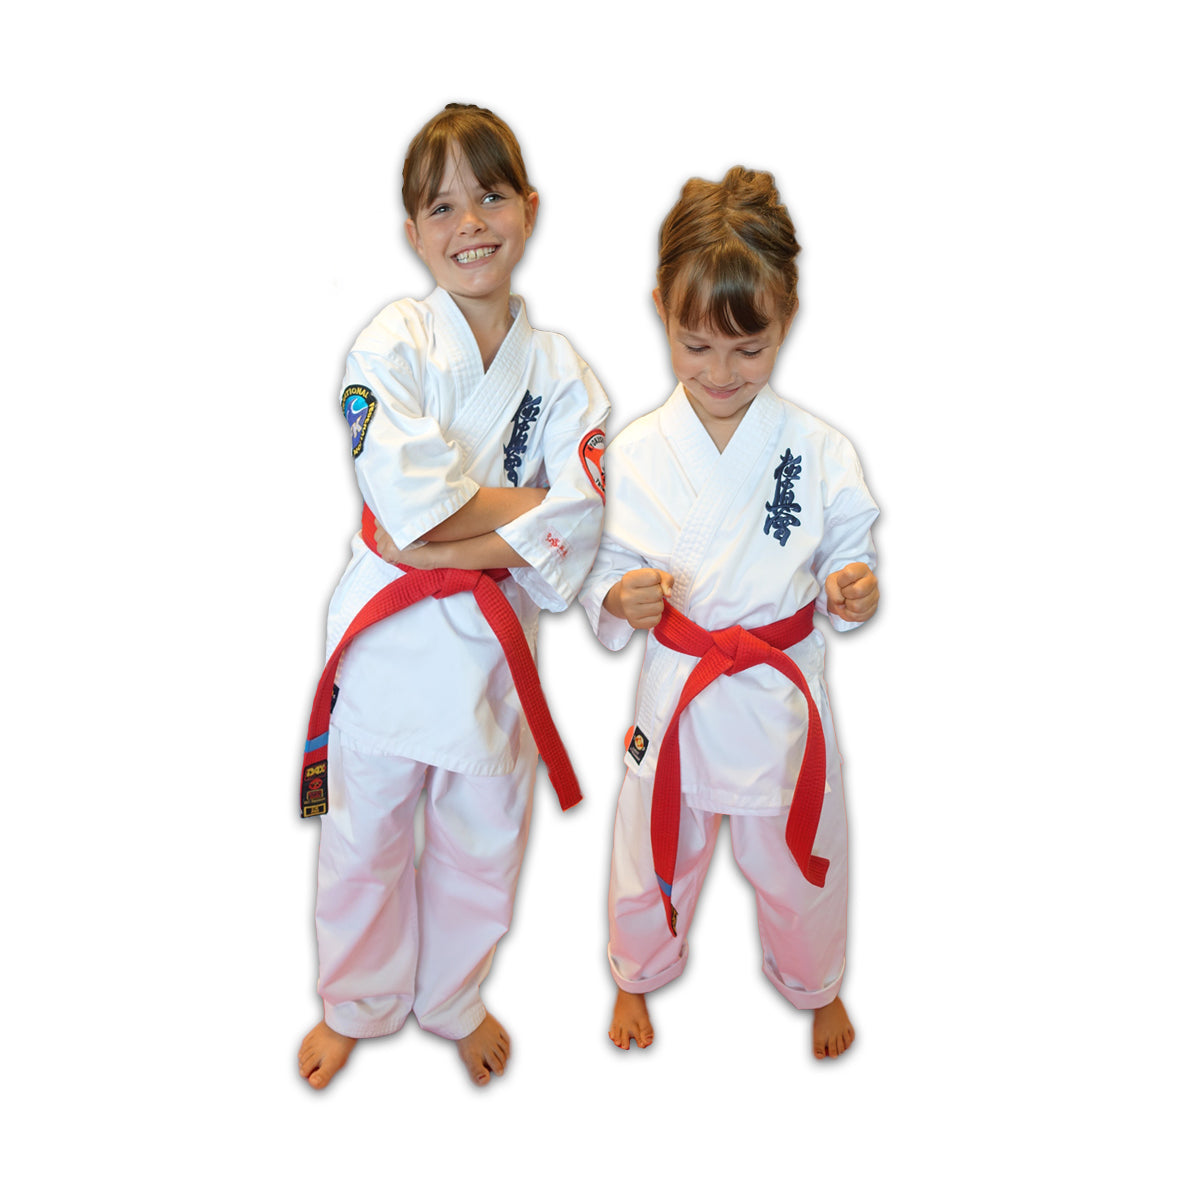 Garyu Kyokushinkai Children S Karate Gi